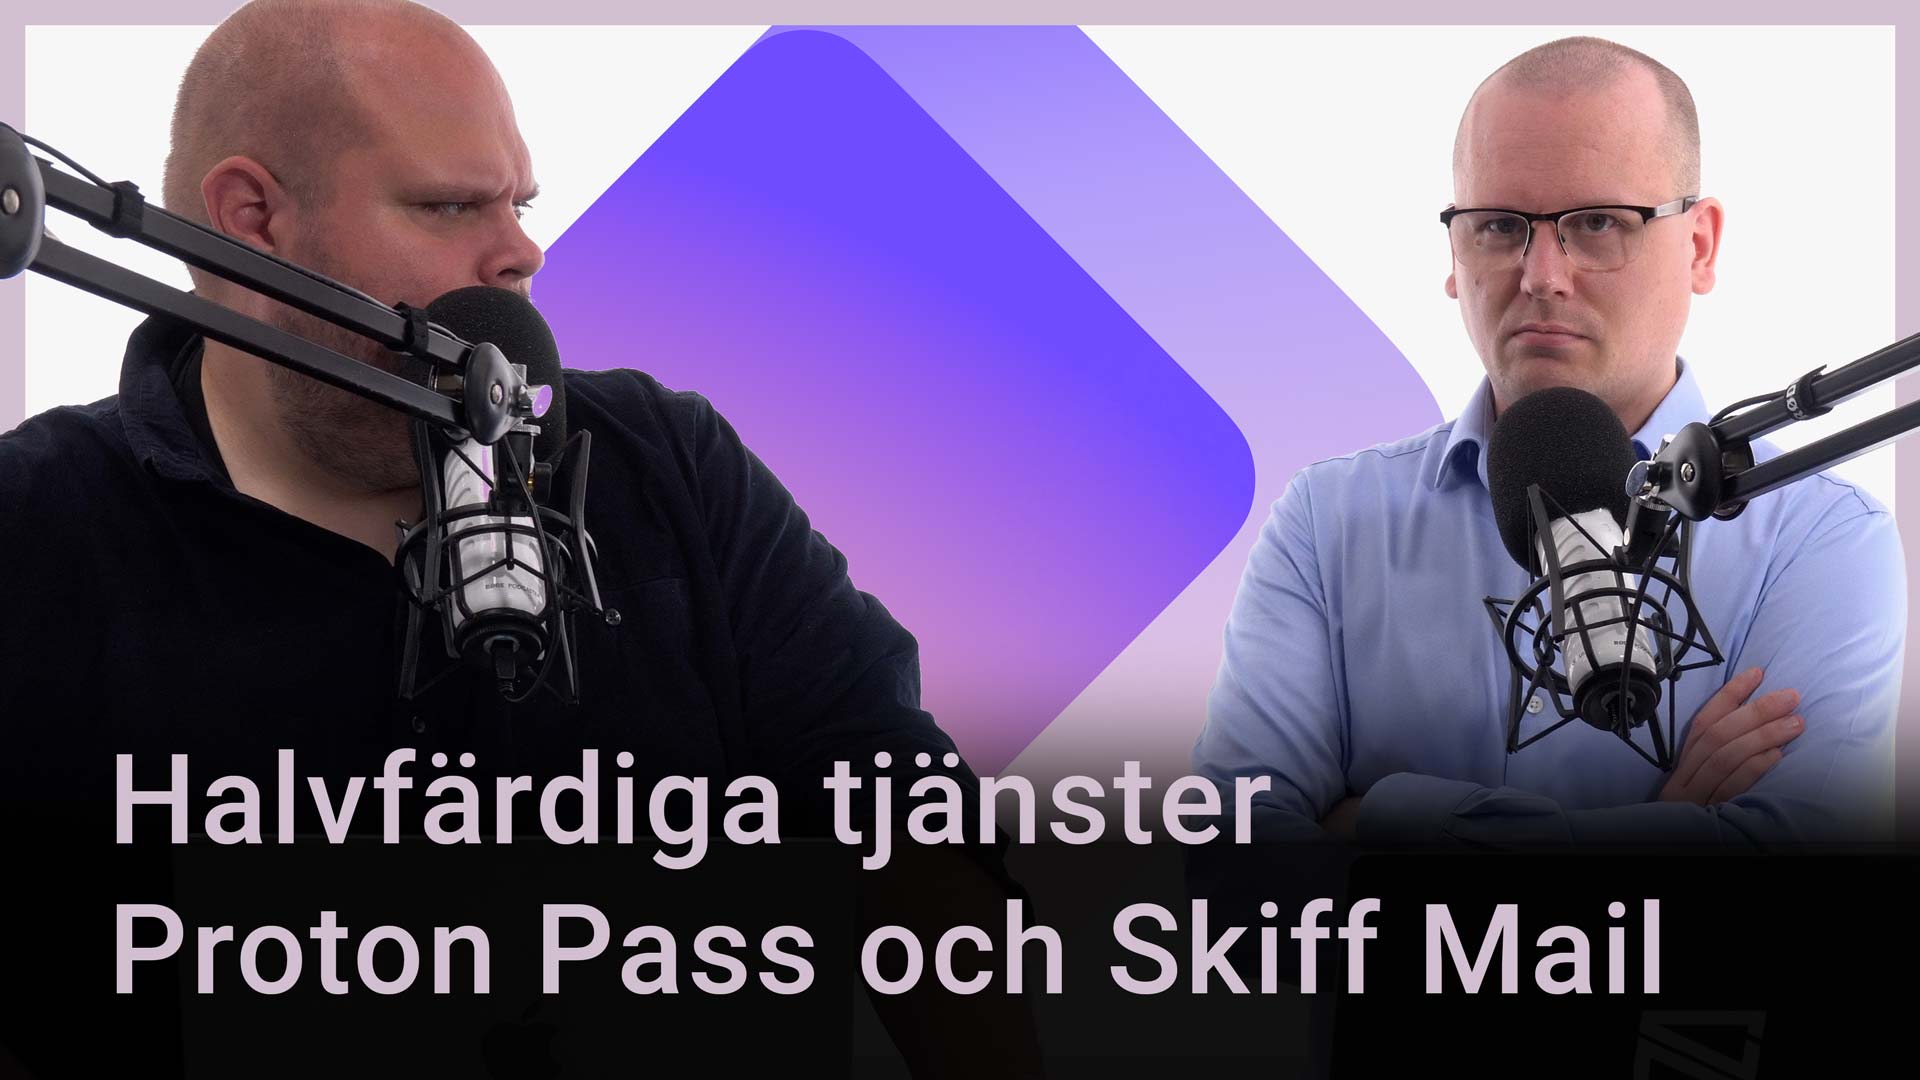 Peter Esse och Karl Emil Nikka står vid mikrofoner. Texten ”Halvfärdiga tjänster Proton Pass och Skiff Mail” står ovanpå.